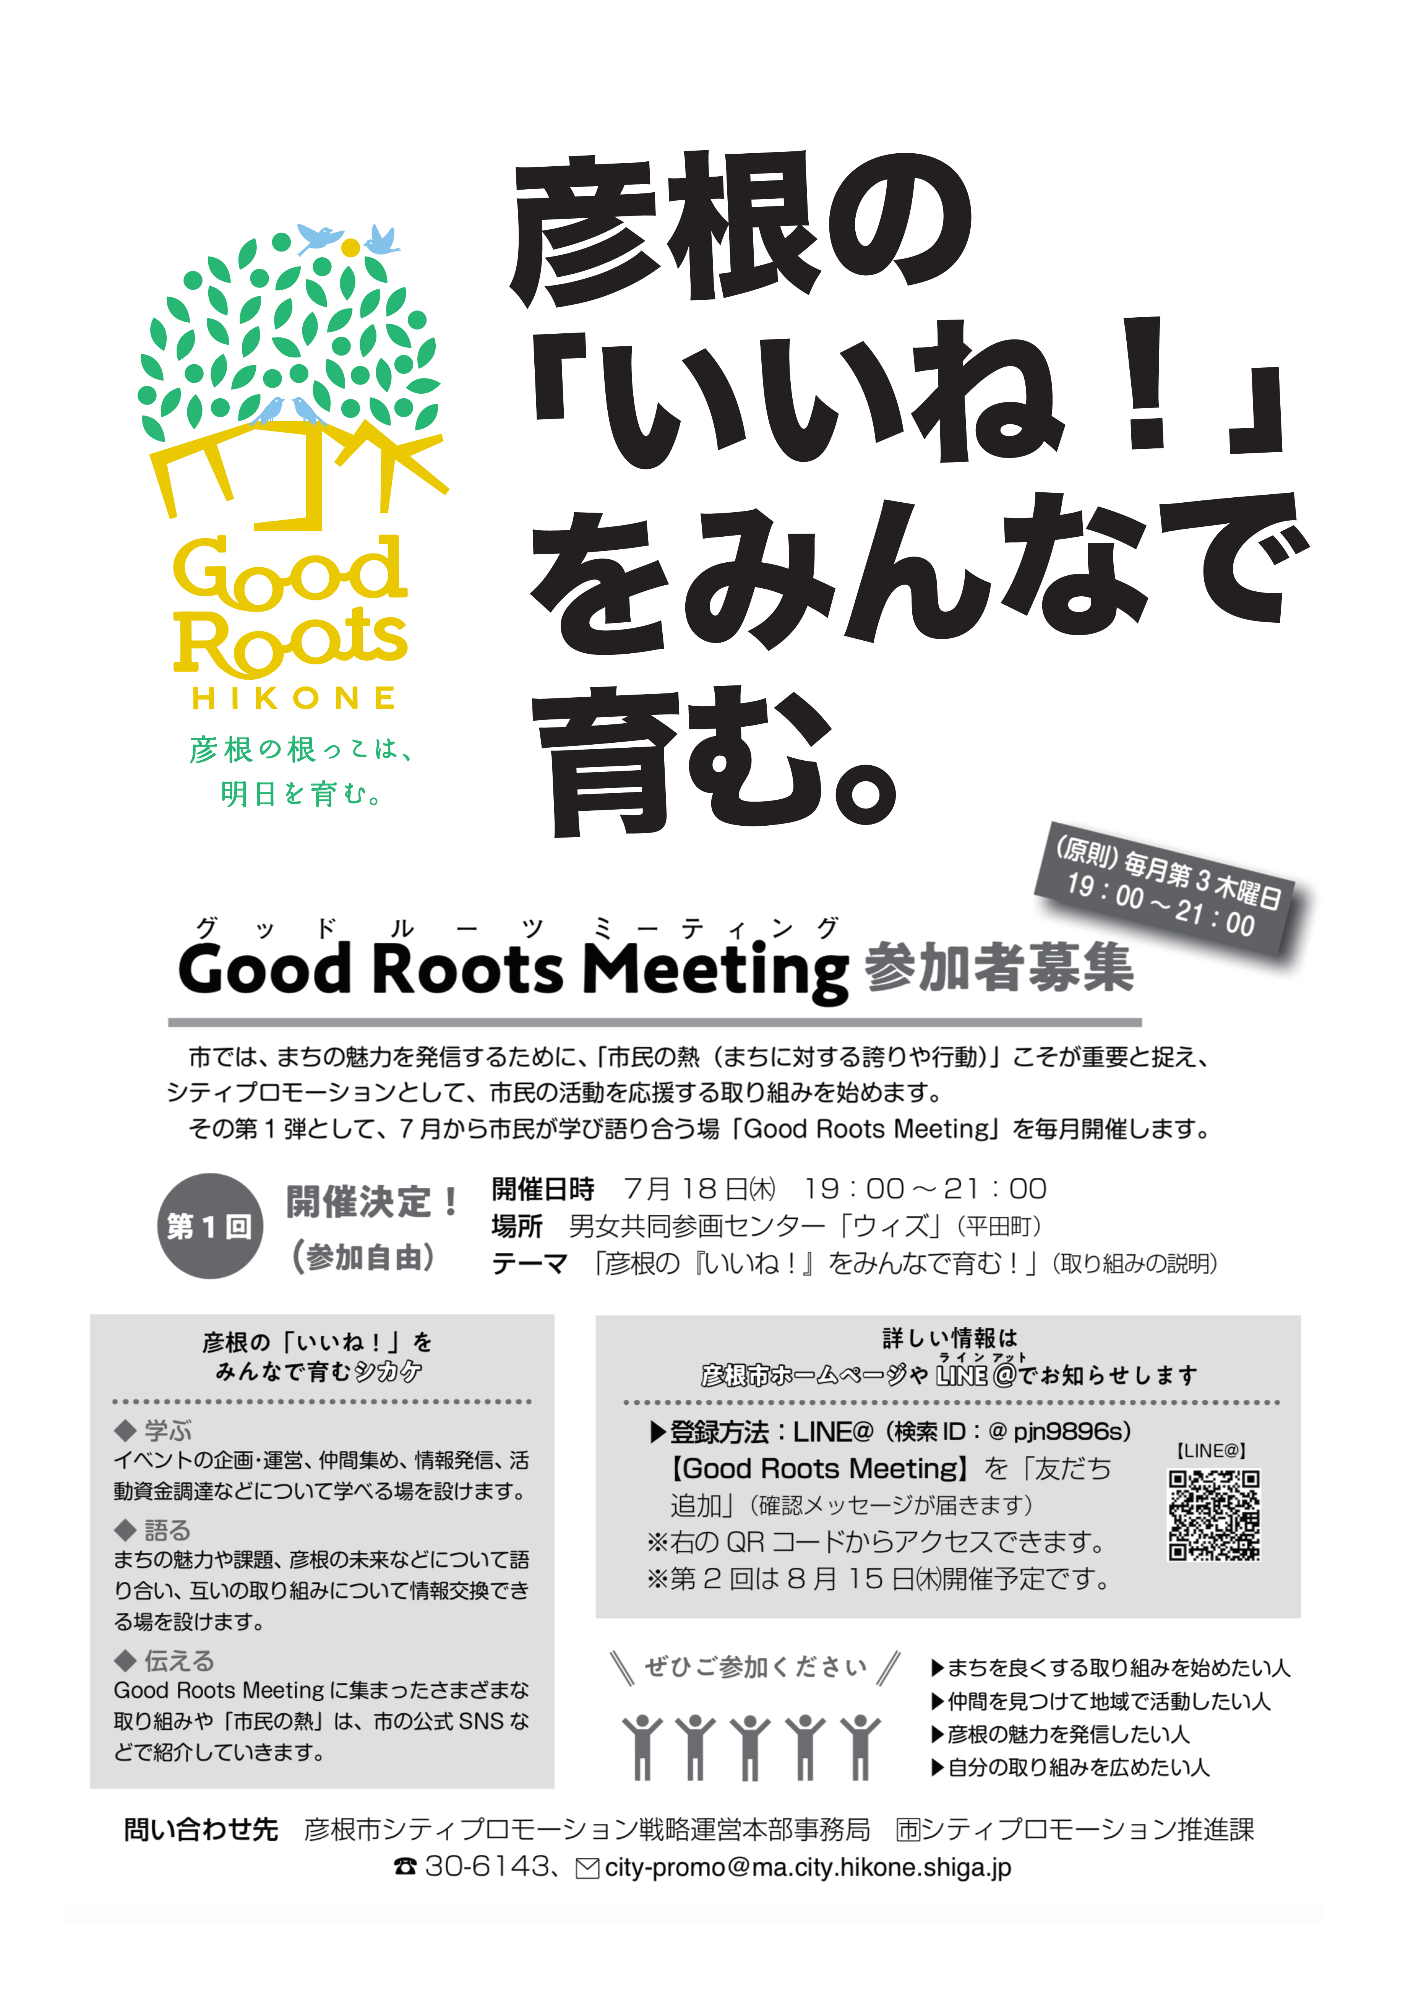 第1回Good Roots Meeting募集のチラシ。詳細は以下。